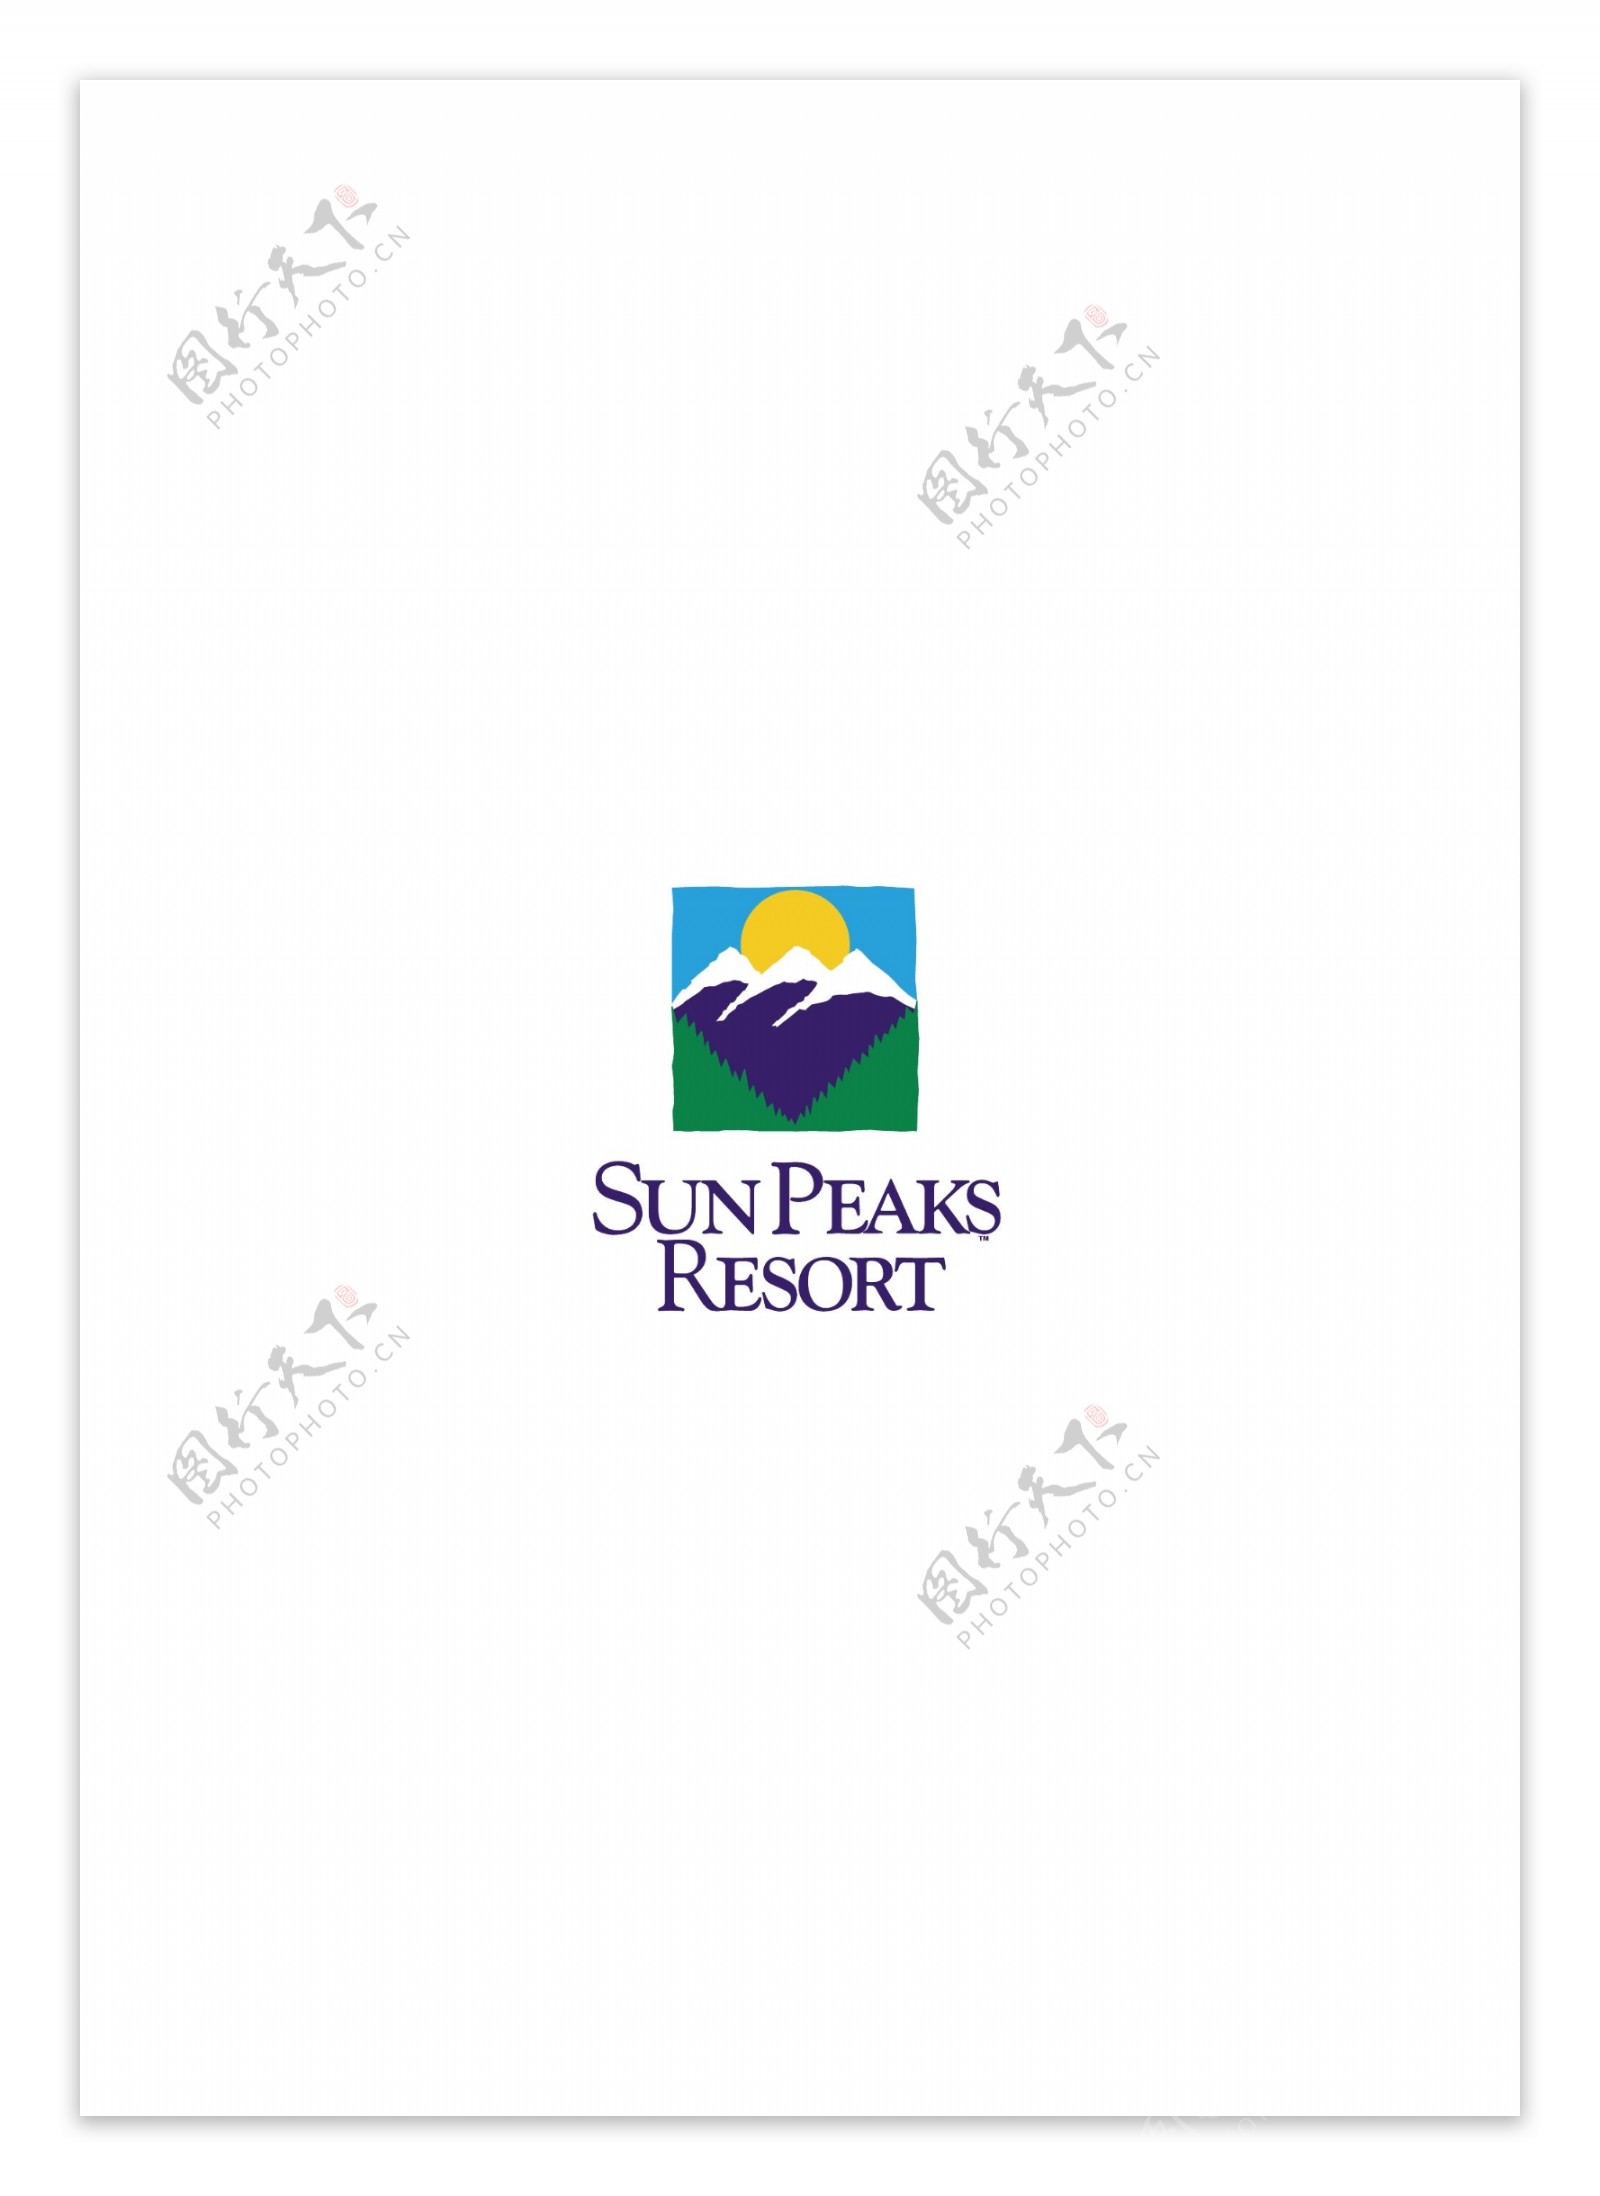 SunPeaksResortlogo设计欣赏SunPeaksResort大饭店标志下载标志设计欣赏